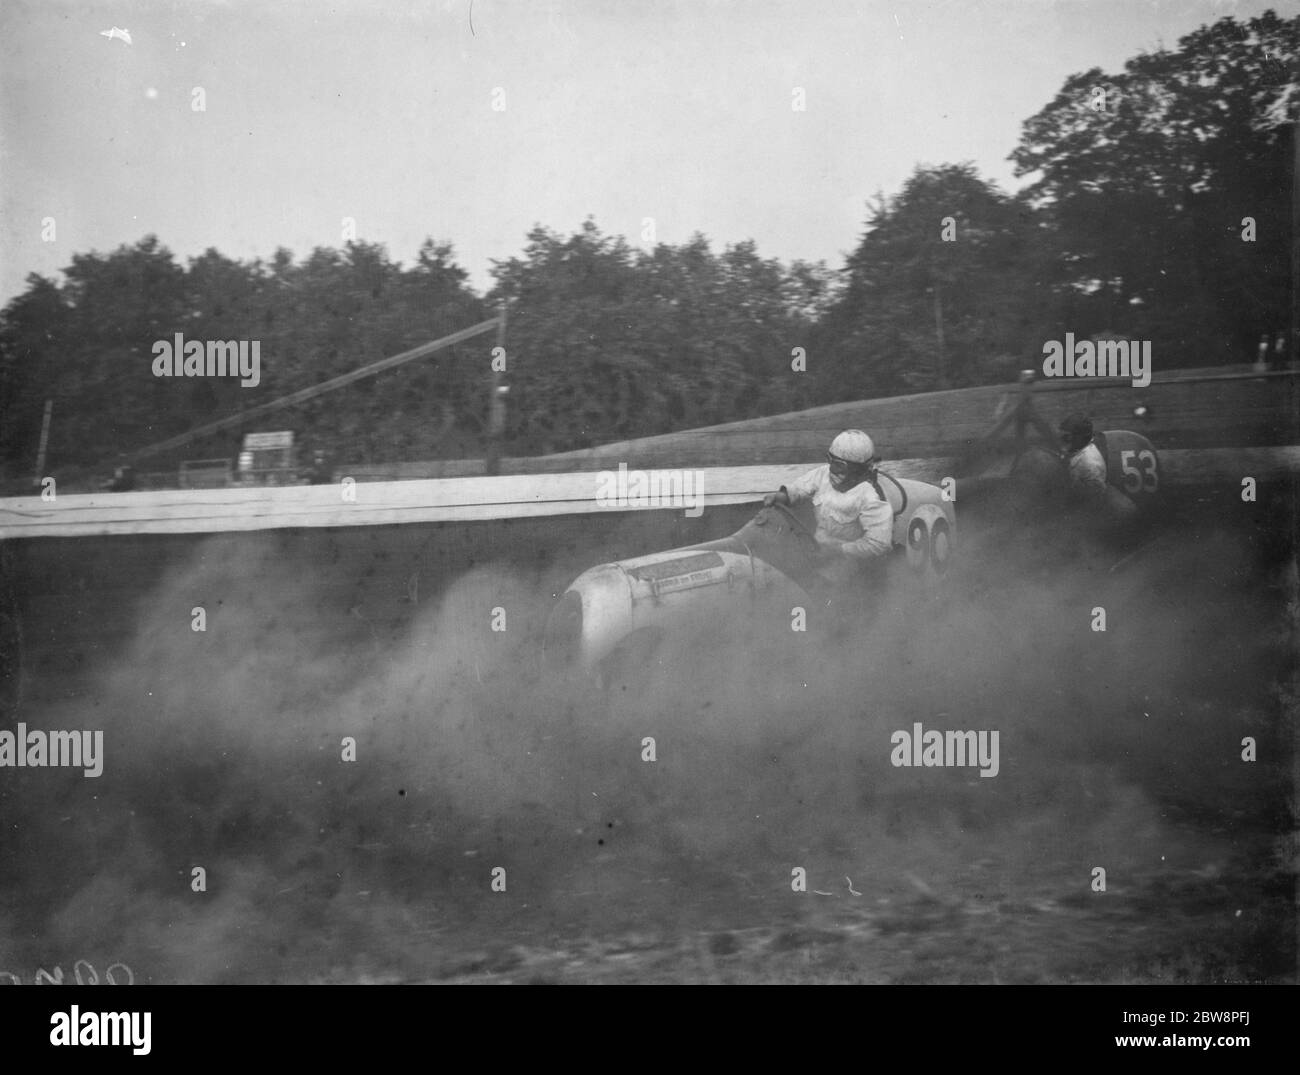 Le Grand prix de la course de voitures miniatures Crystal Palace . Frank Chiswell dérape sa voiture dans un nuage de poussière . 1938 Banque D'Images